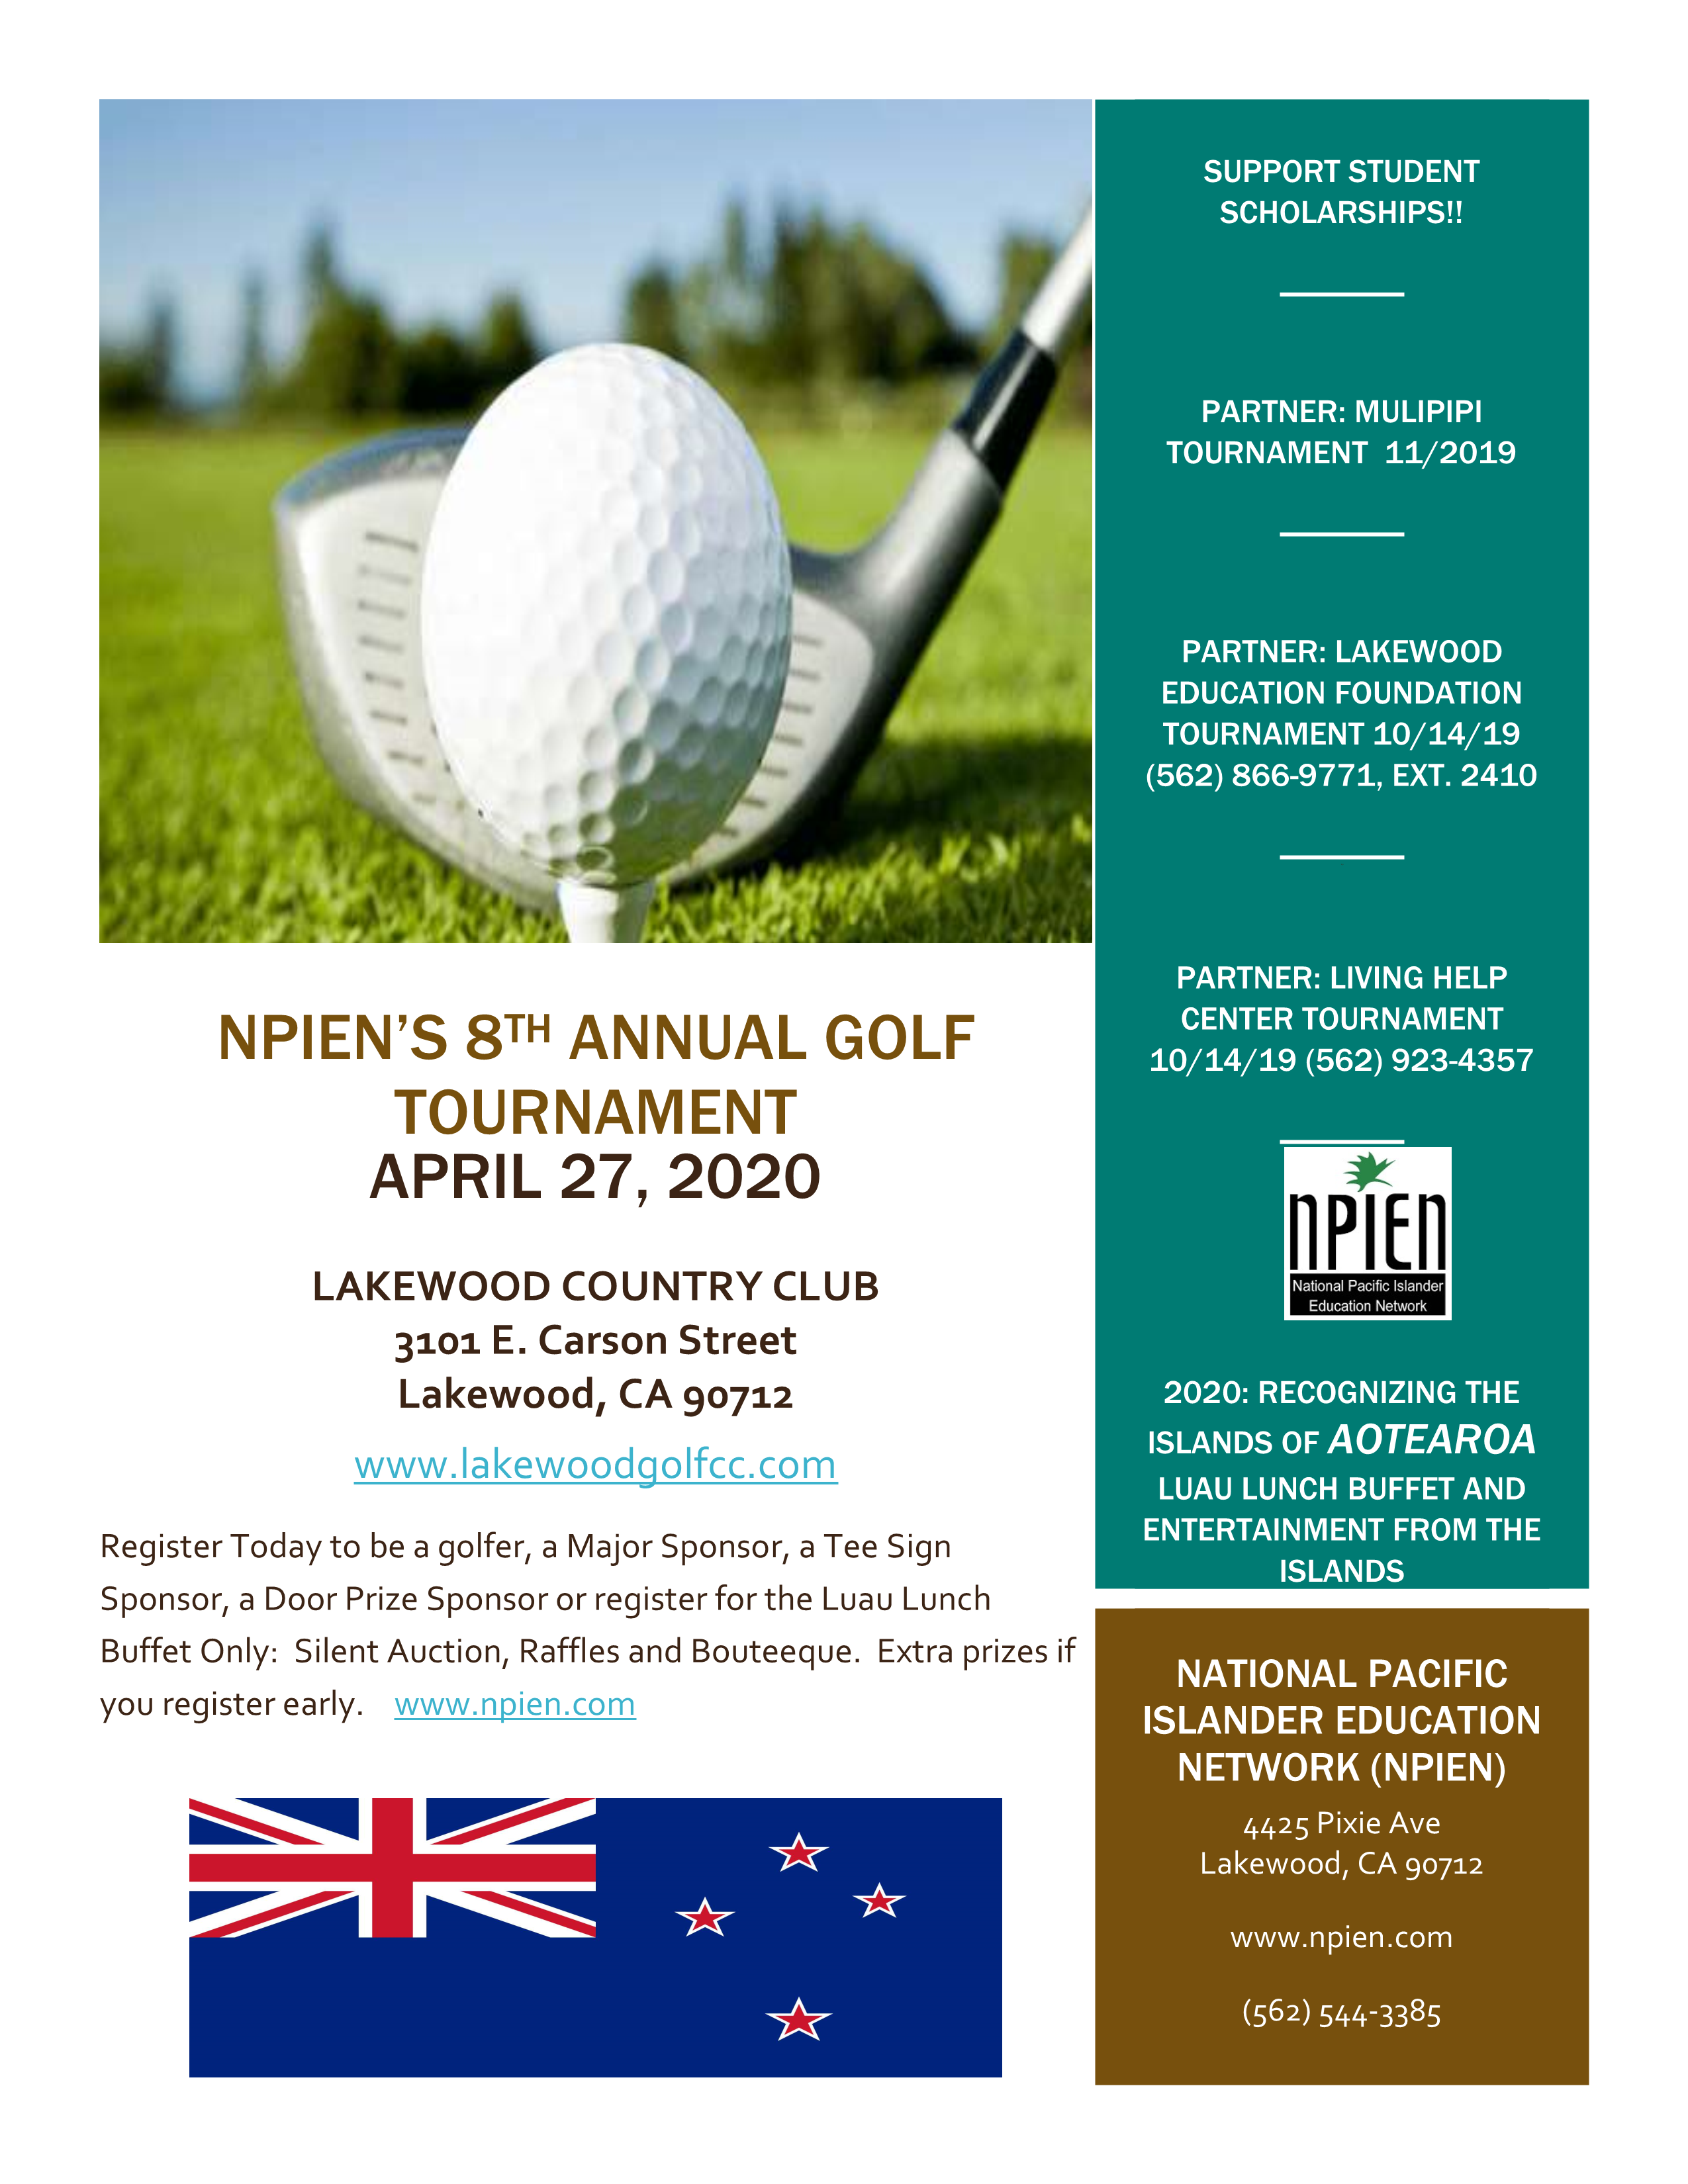 NPIEN 8th Annual Golf Tournament